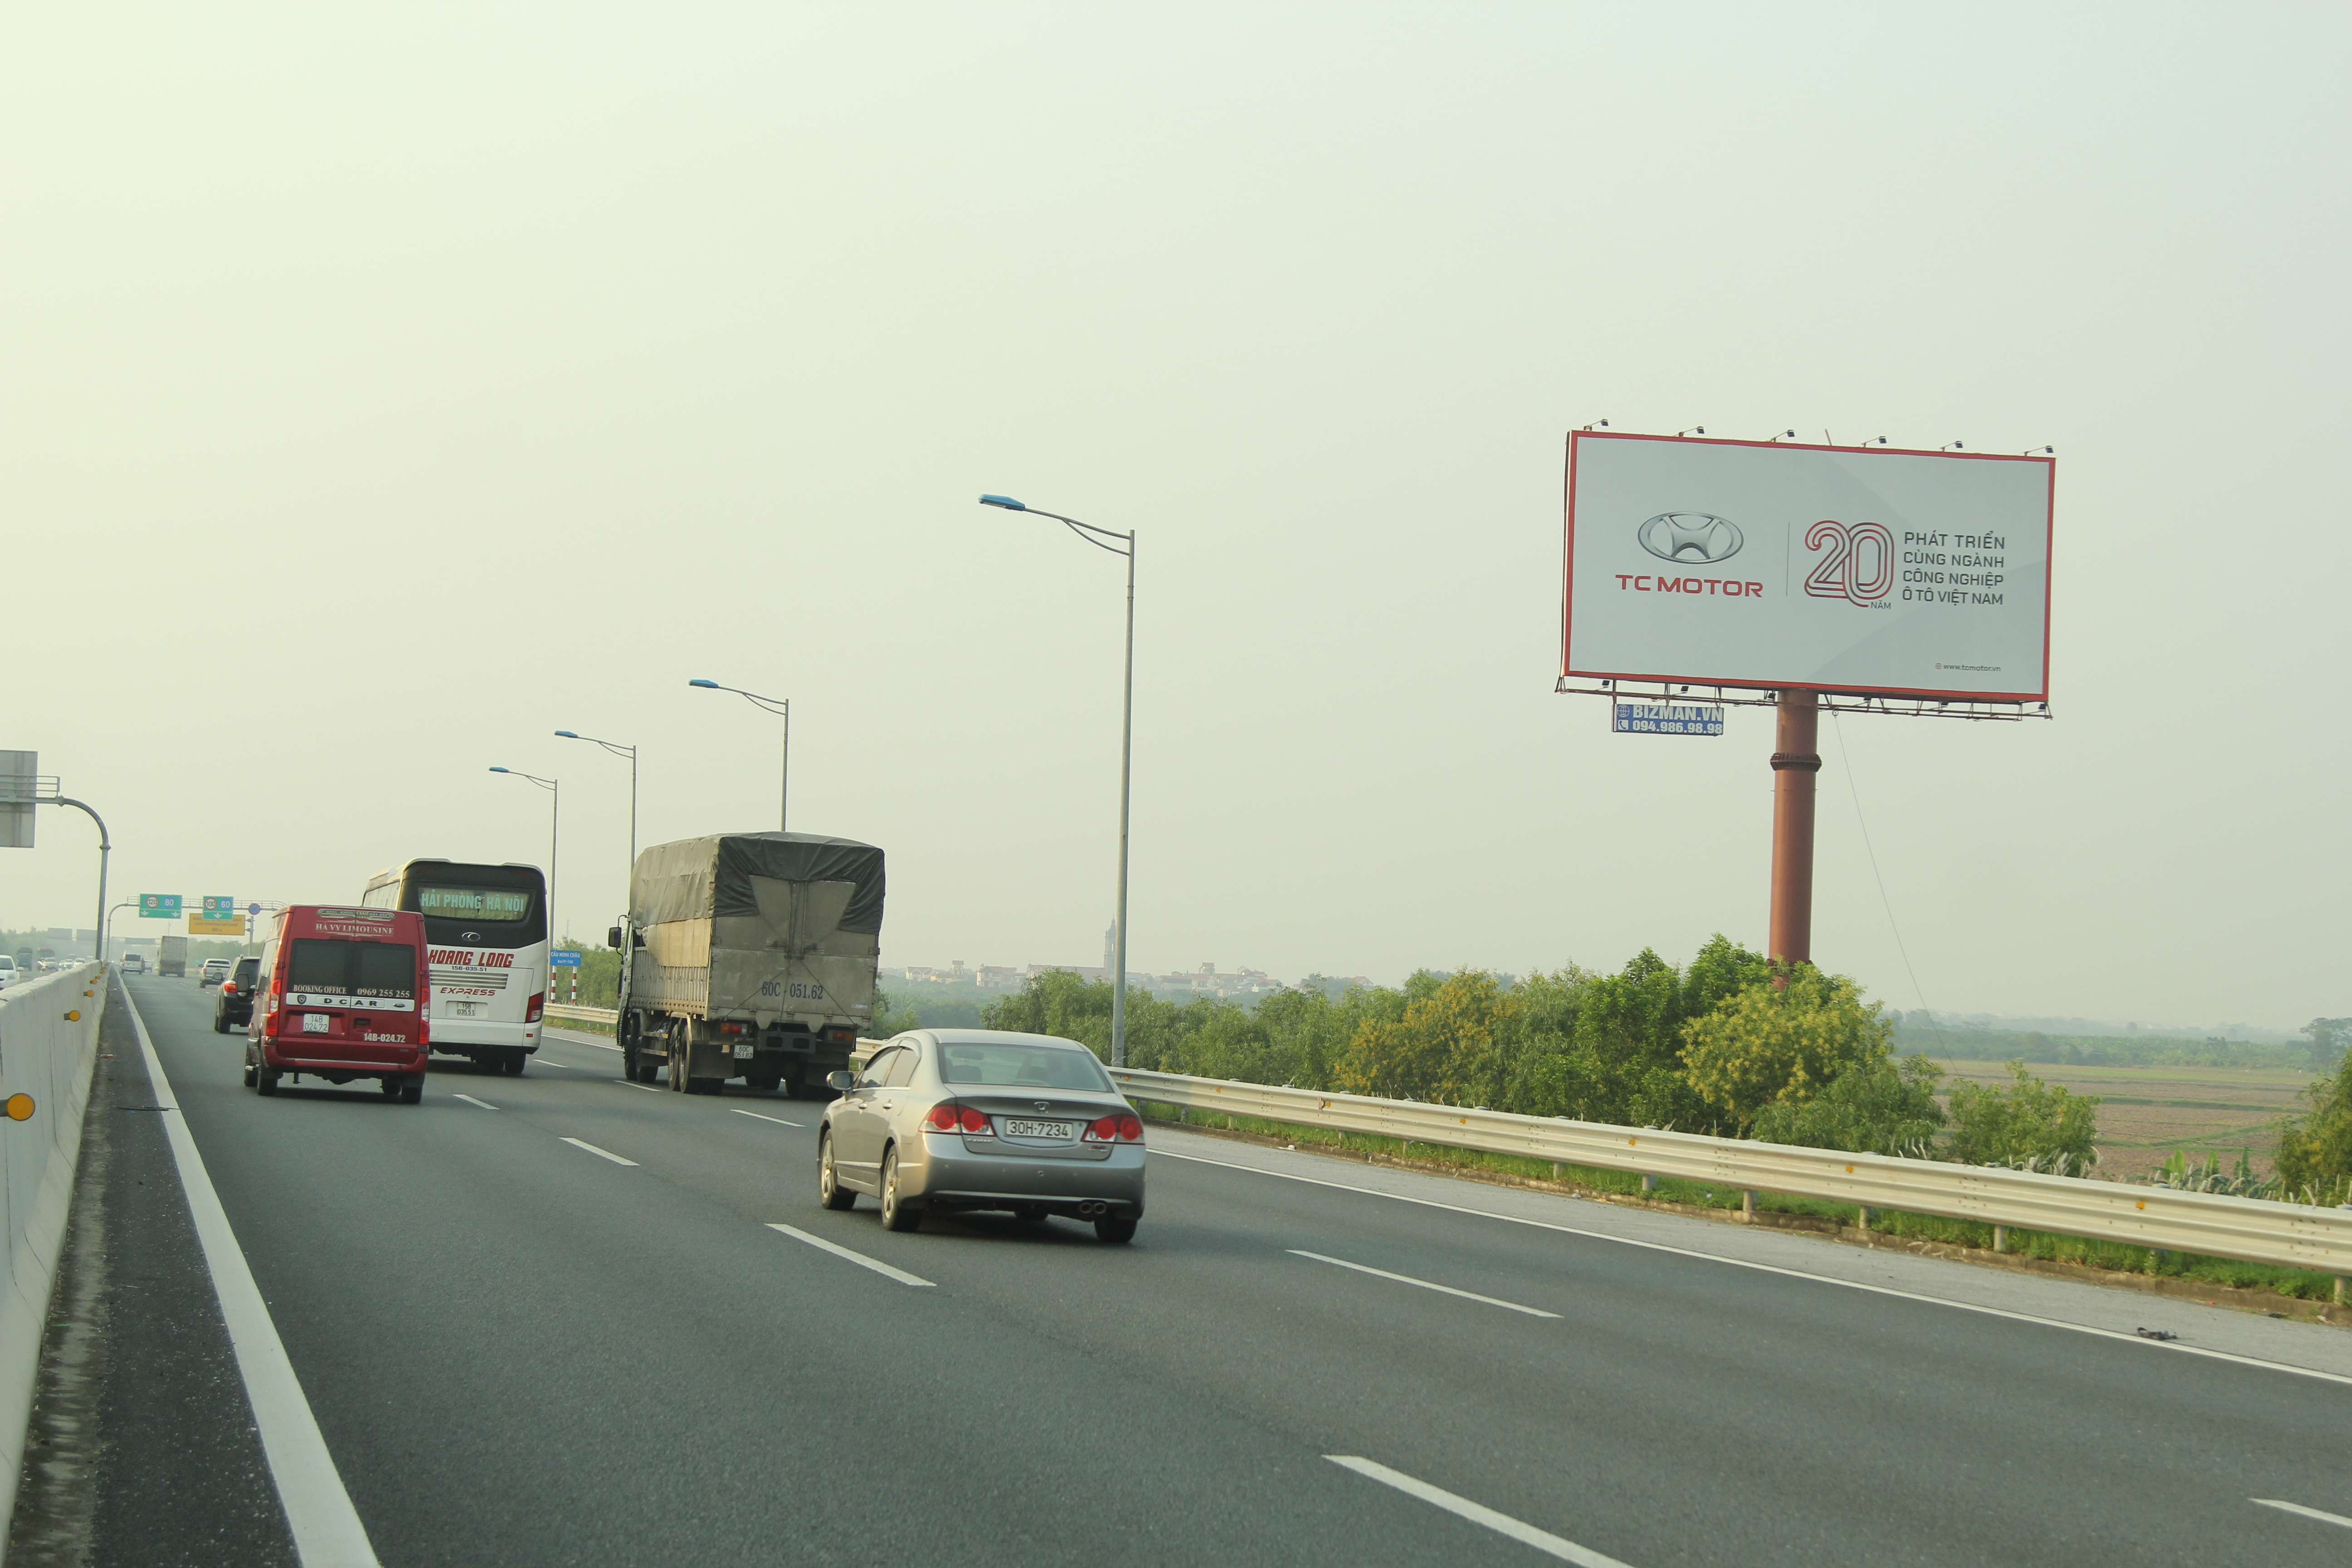 Biển quảng cáo ở vị trí cao tốc 5B Hà Nội - Hải Phòng